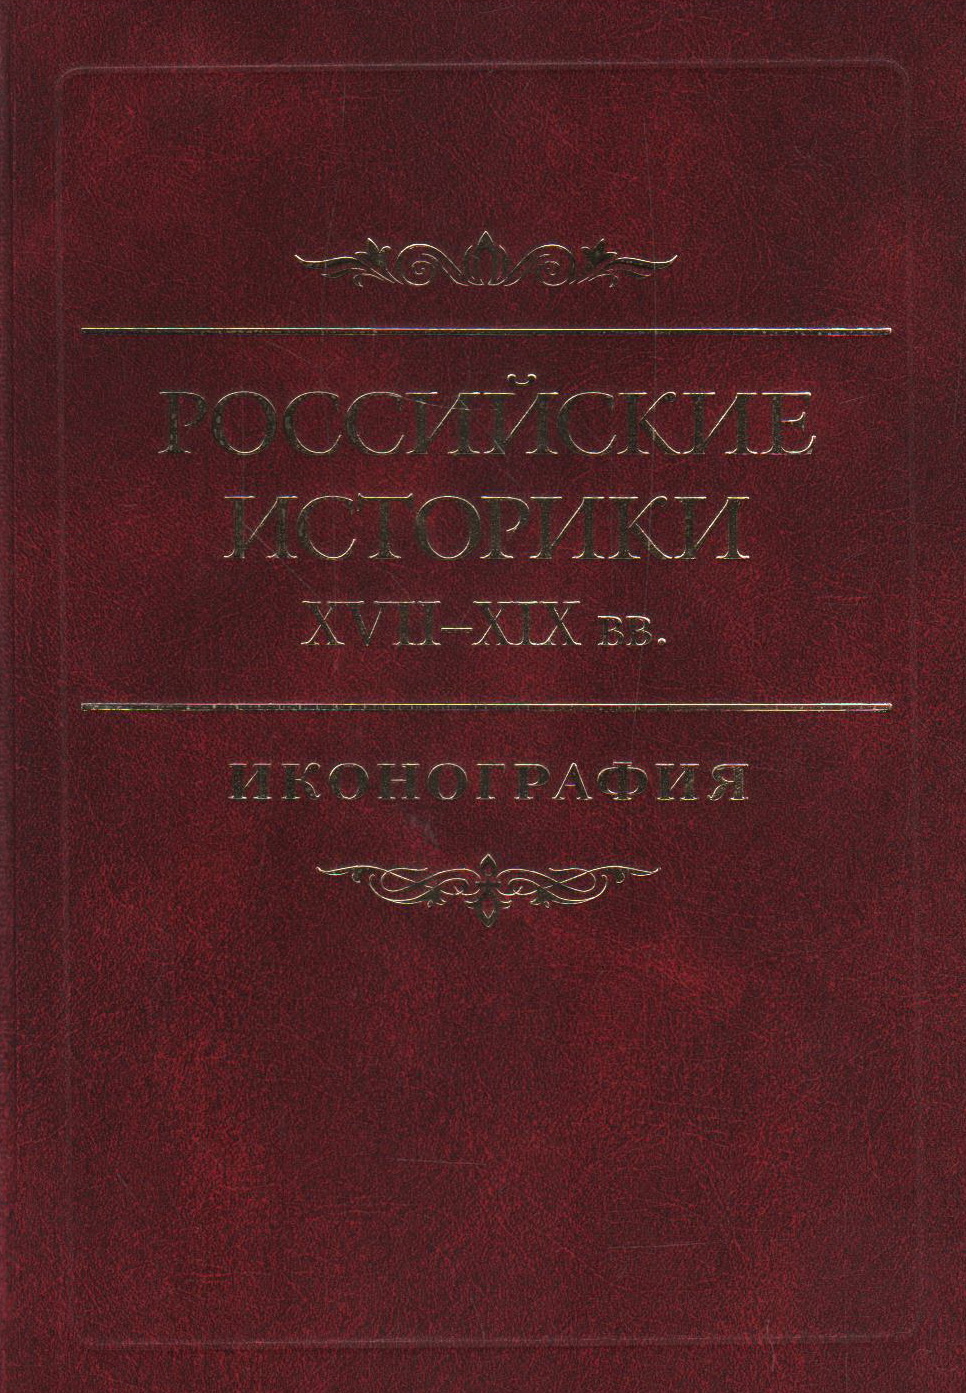 Российские историки XVII-XIX вв. Иконография